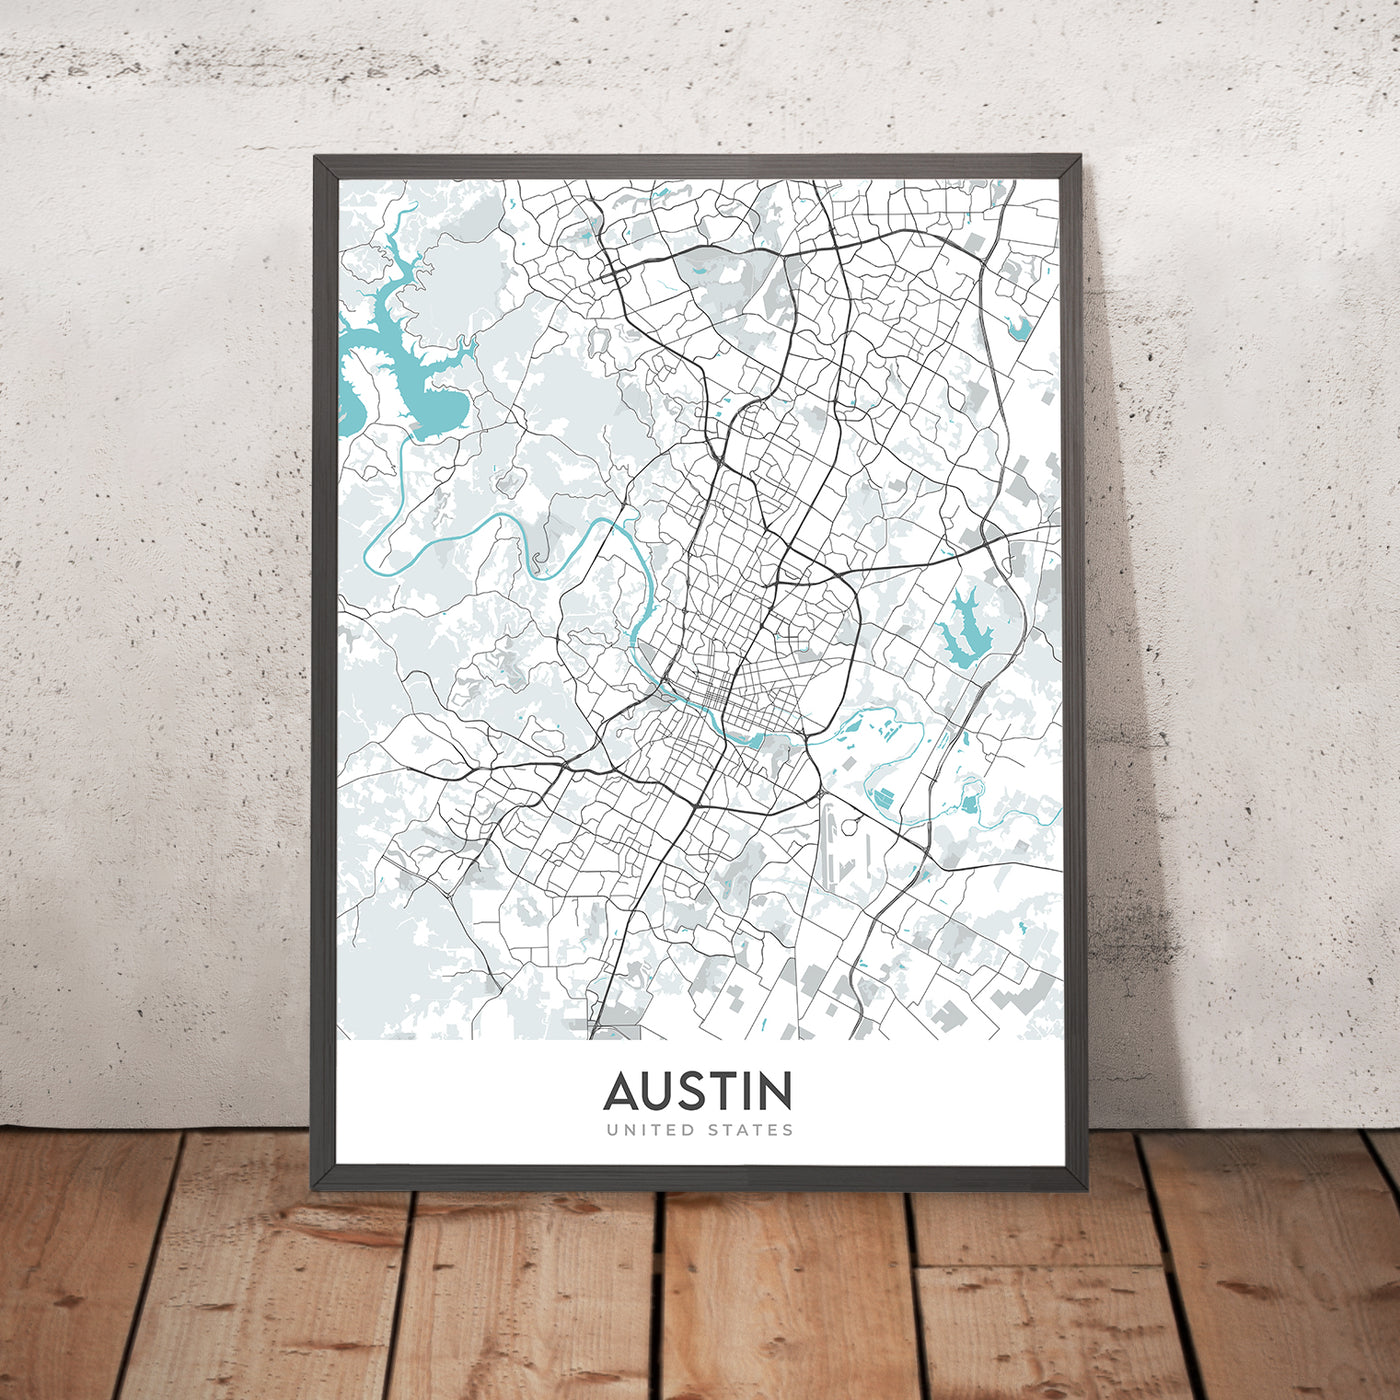 Plan de la ville moderne d'Austin, Texas : centre-ville, Université du Texas, Zilker Park, I-35, US-183